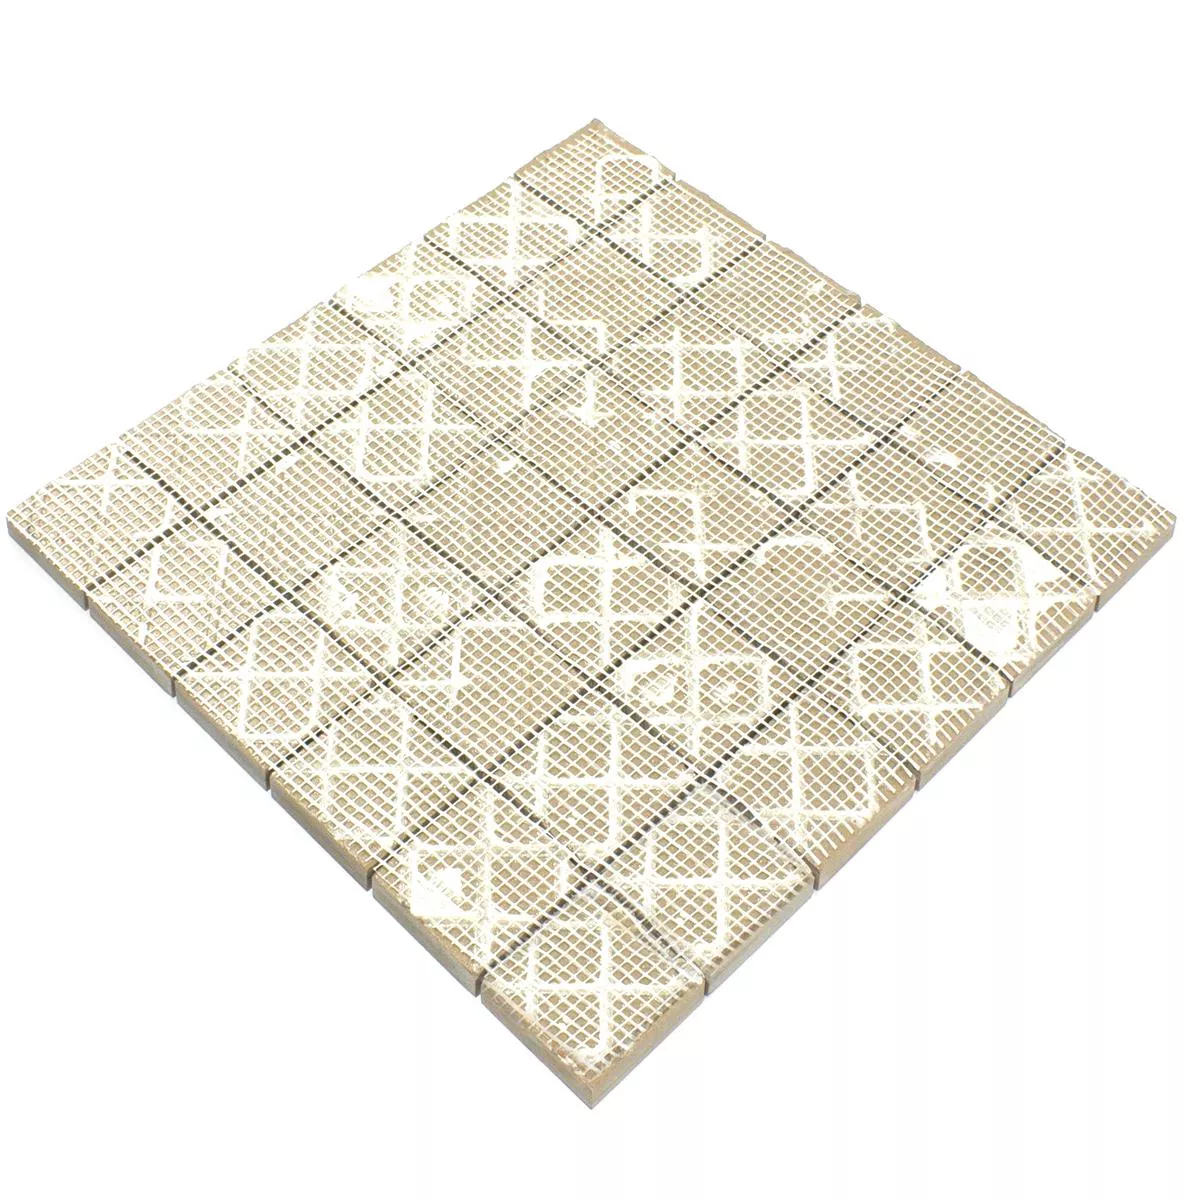 Ceramic Mosaic Tile Ibiza Stone Optic Grey